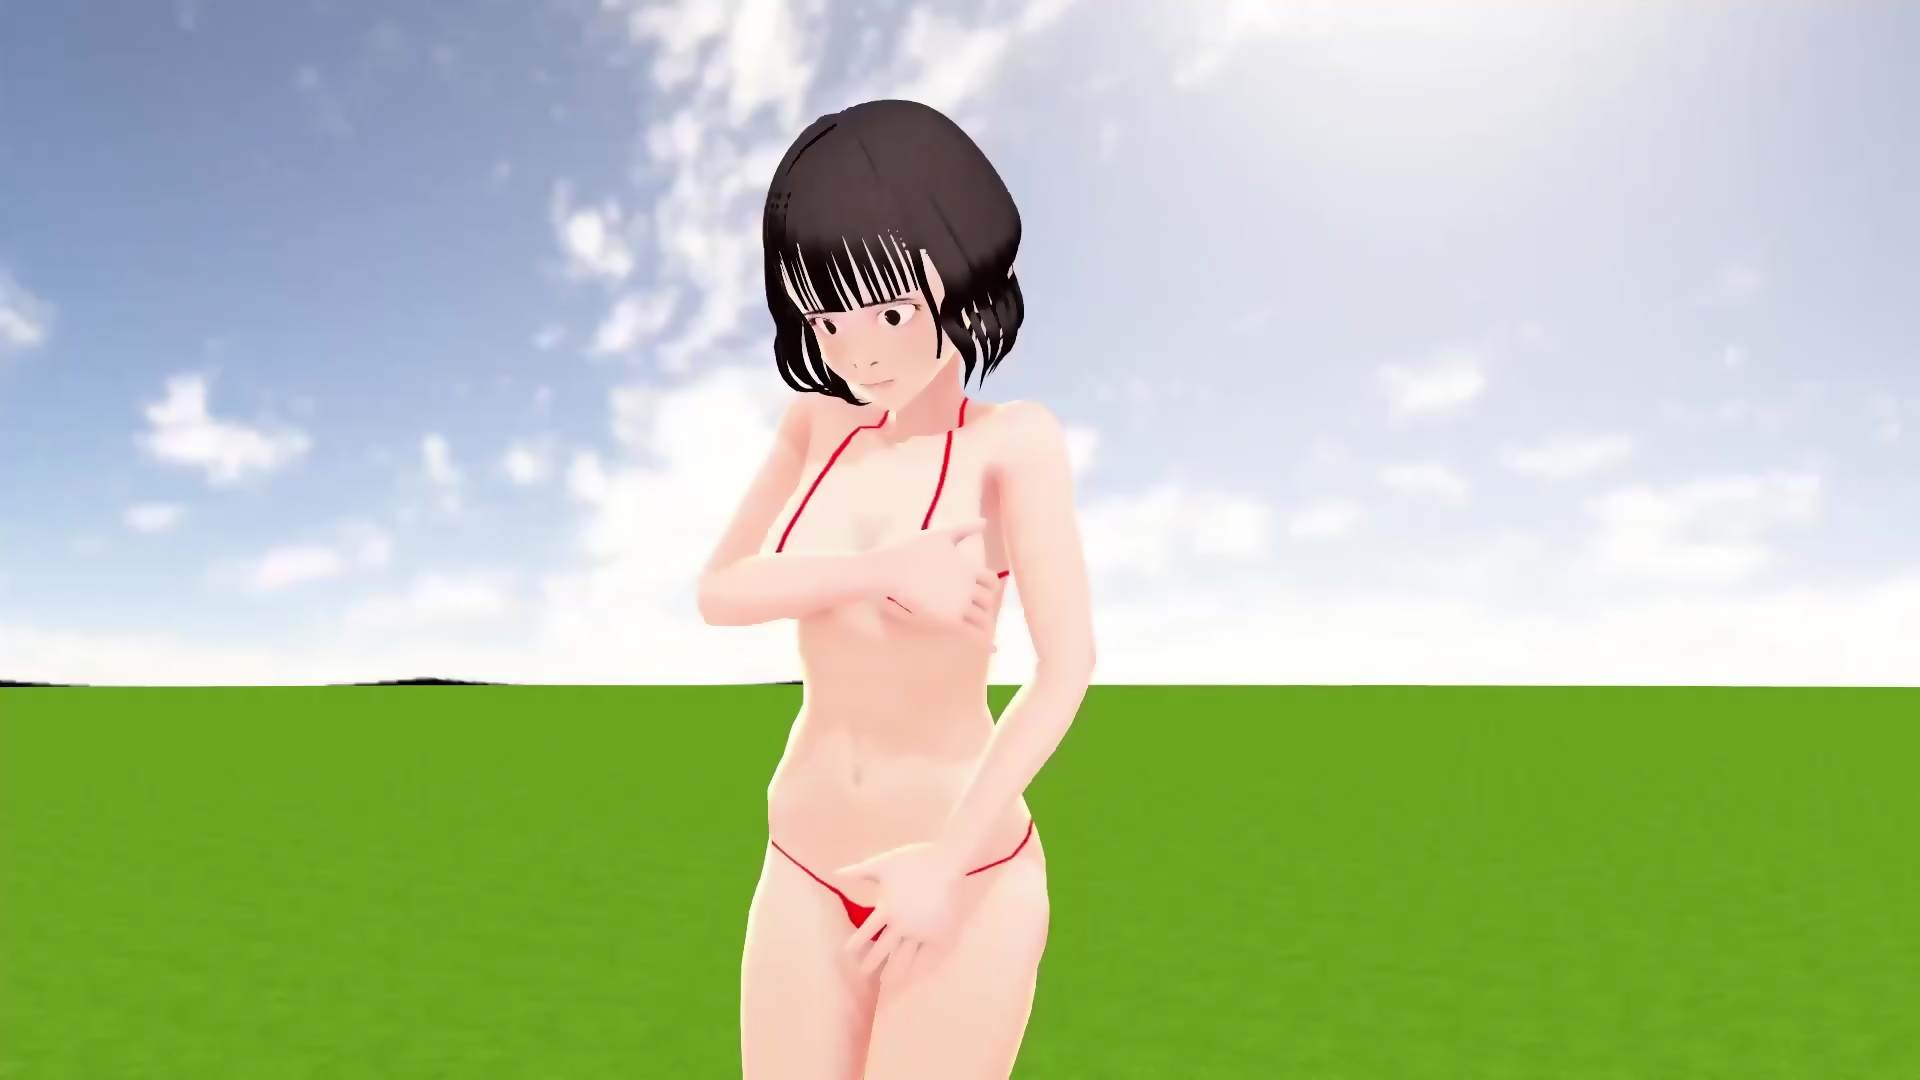 Naked anime women